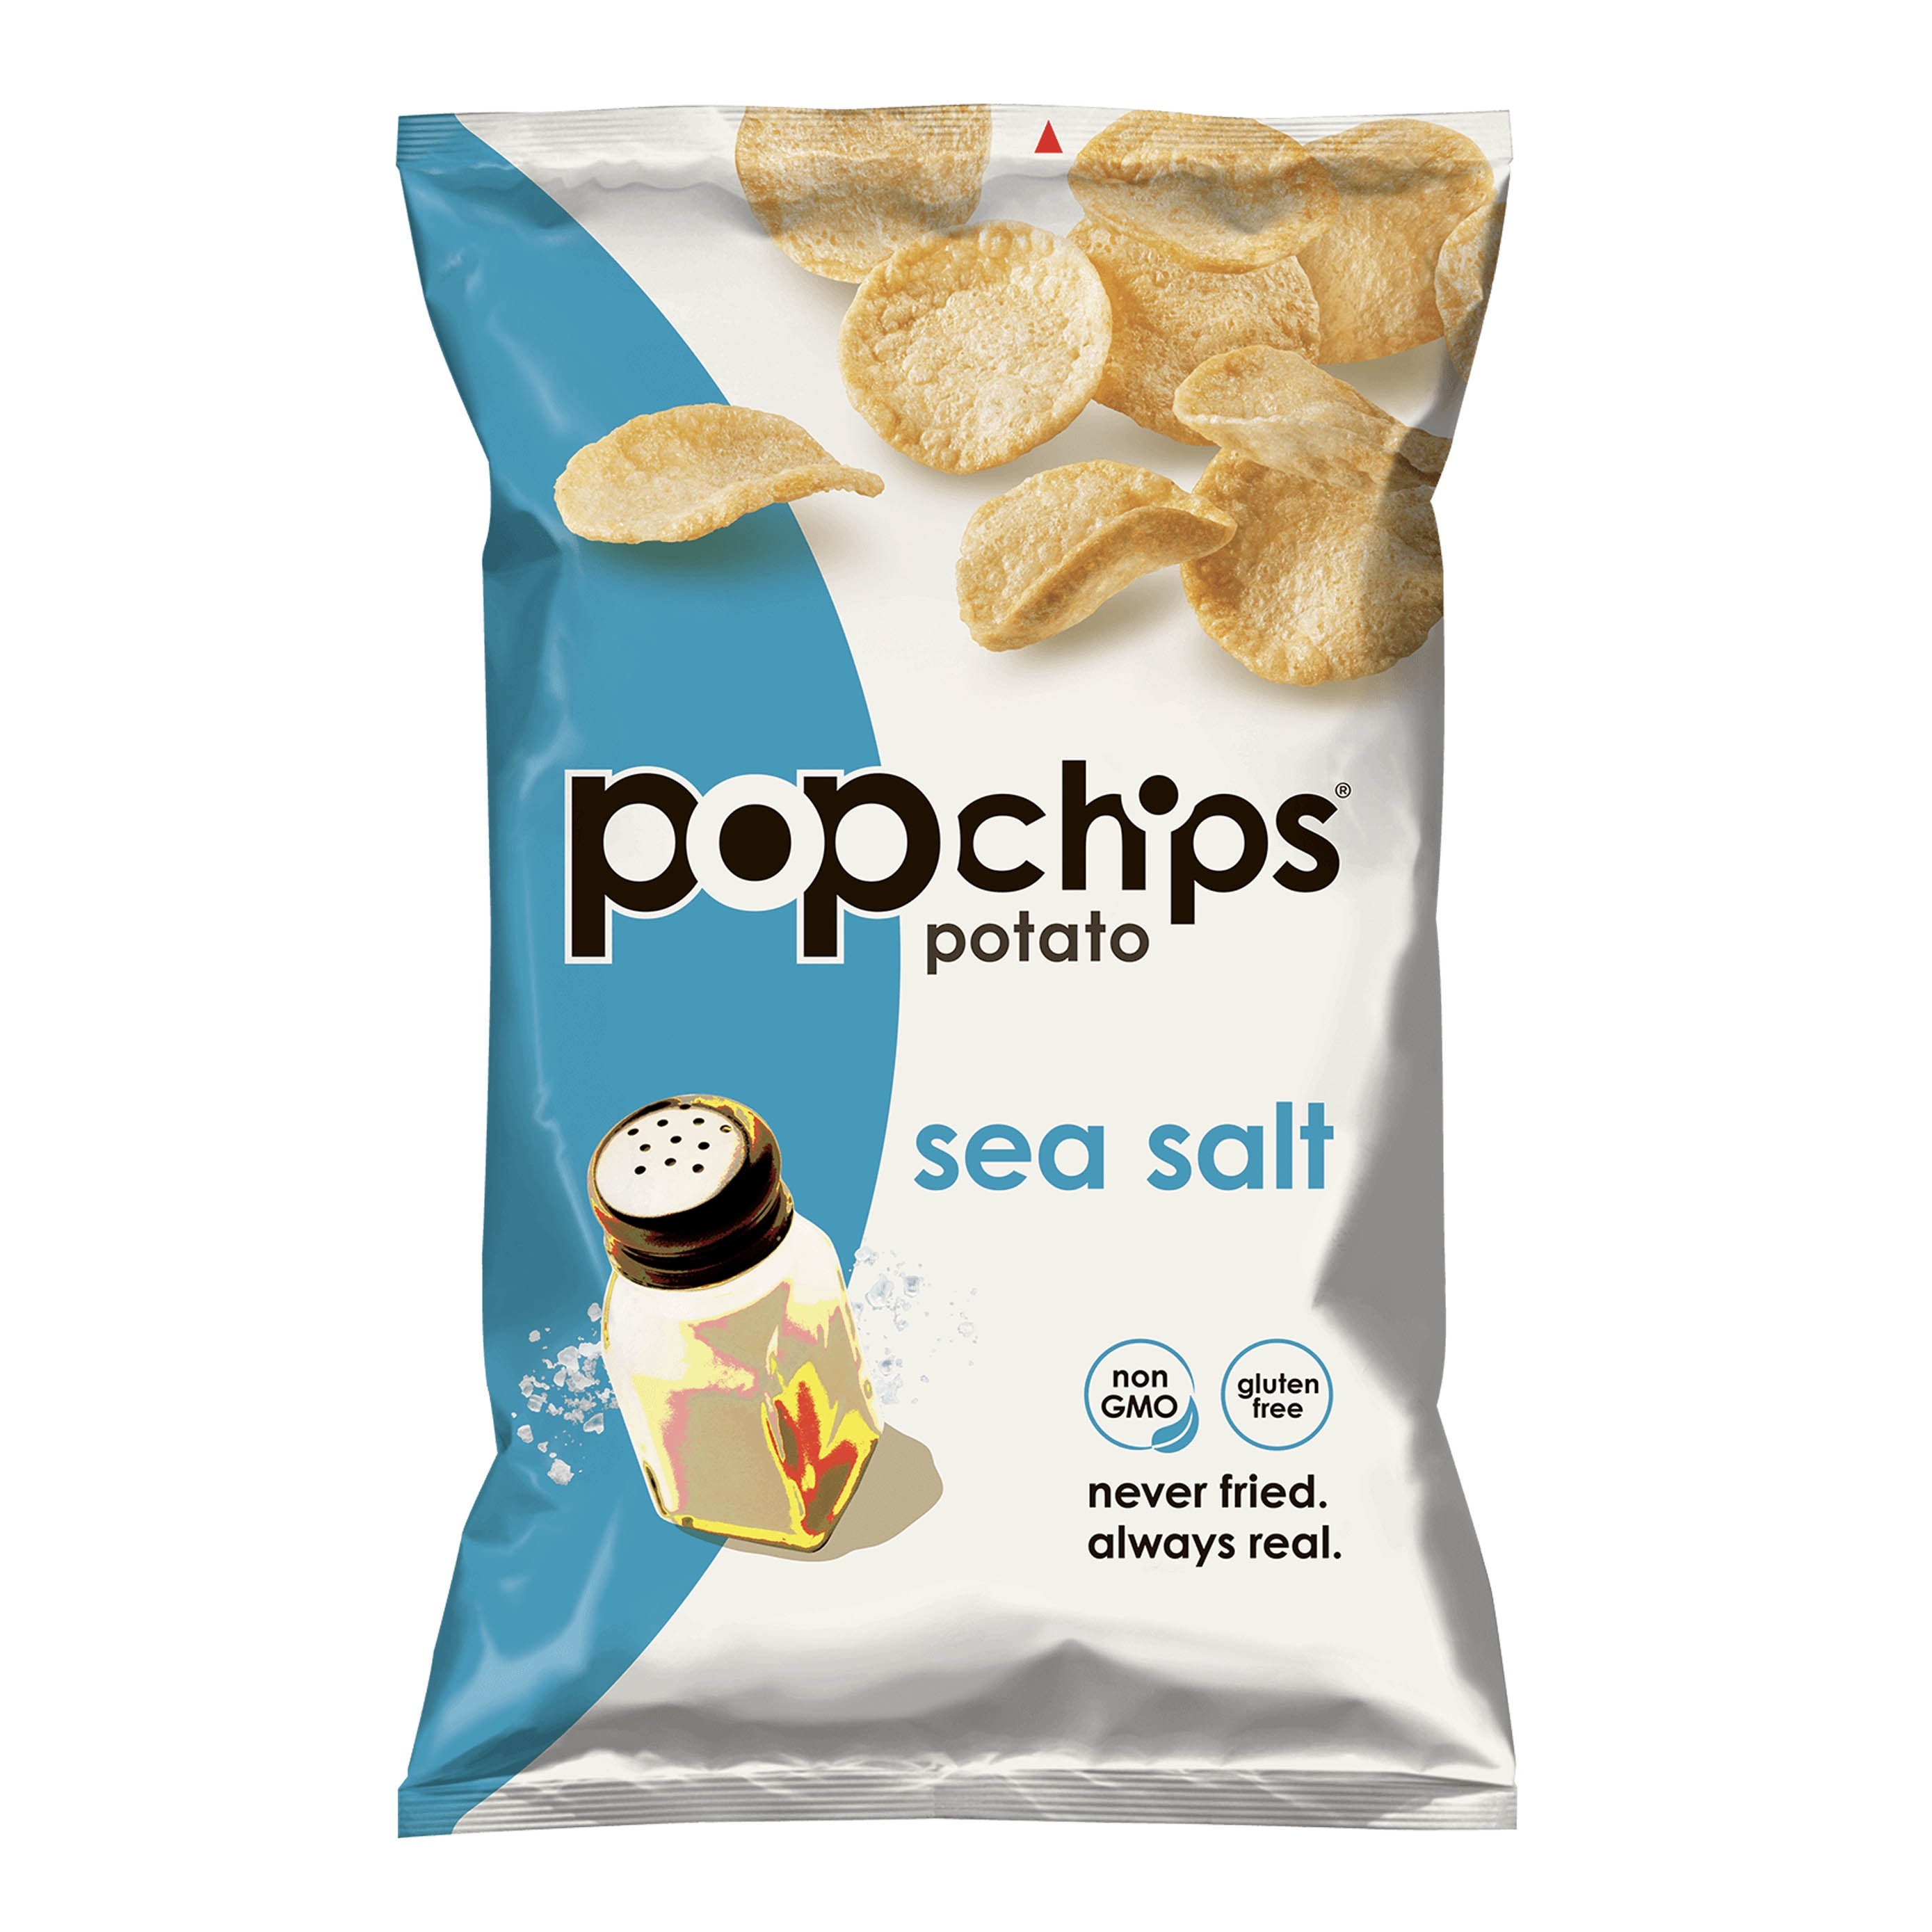 美國無麩質非油炸海鹽薯片 "POPCHIPS" GLUTEN FREE SEA SALT POTATO CHIPS